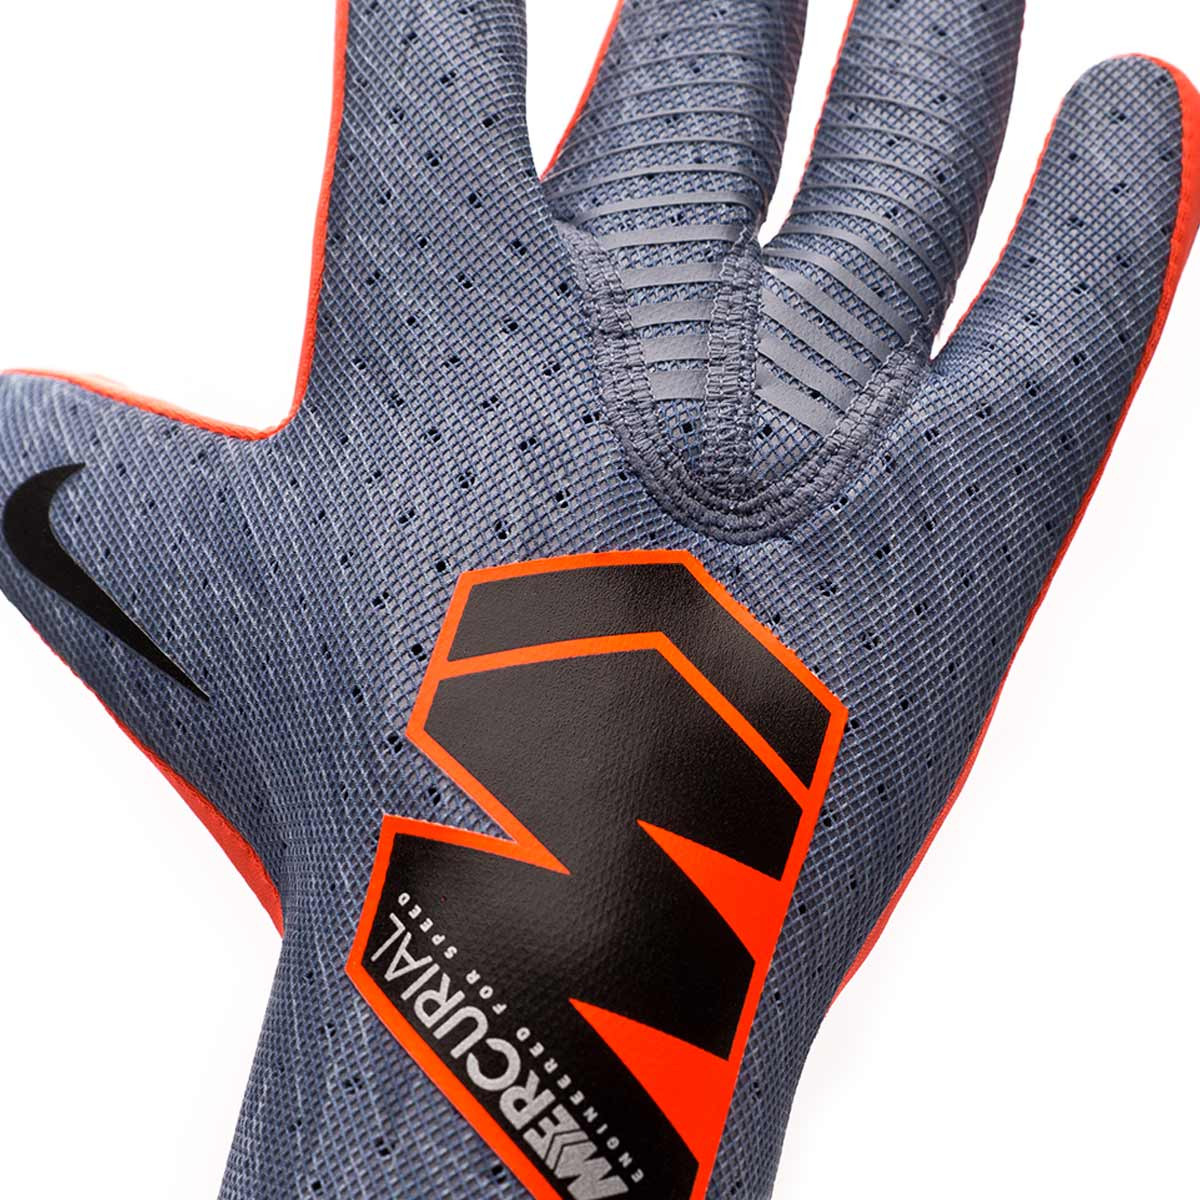 nike mercurial touch elite gloves amazon